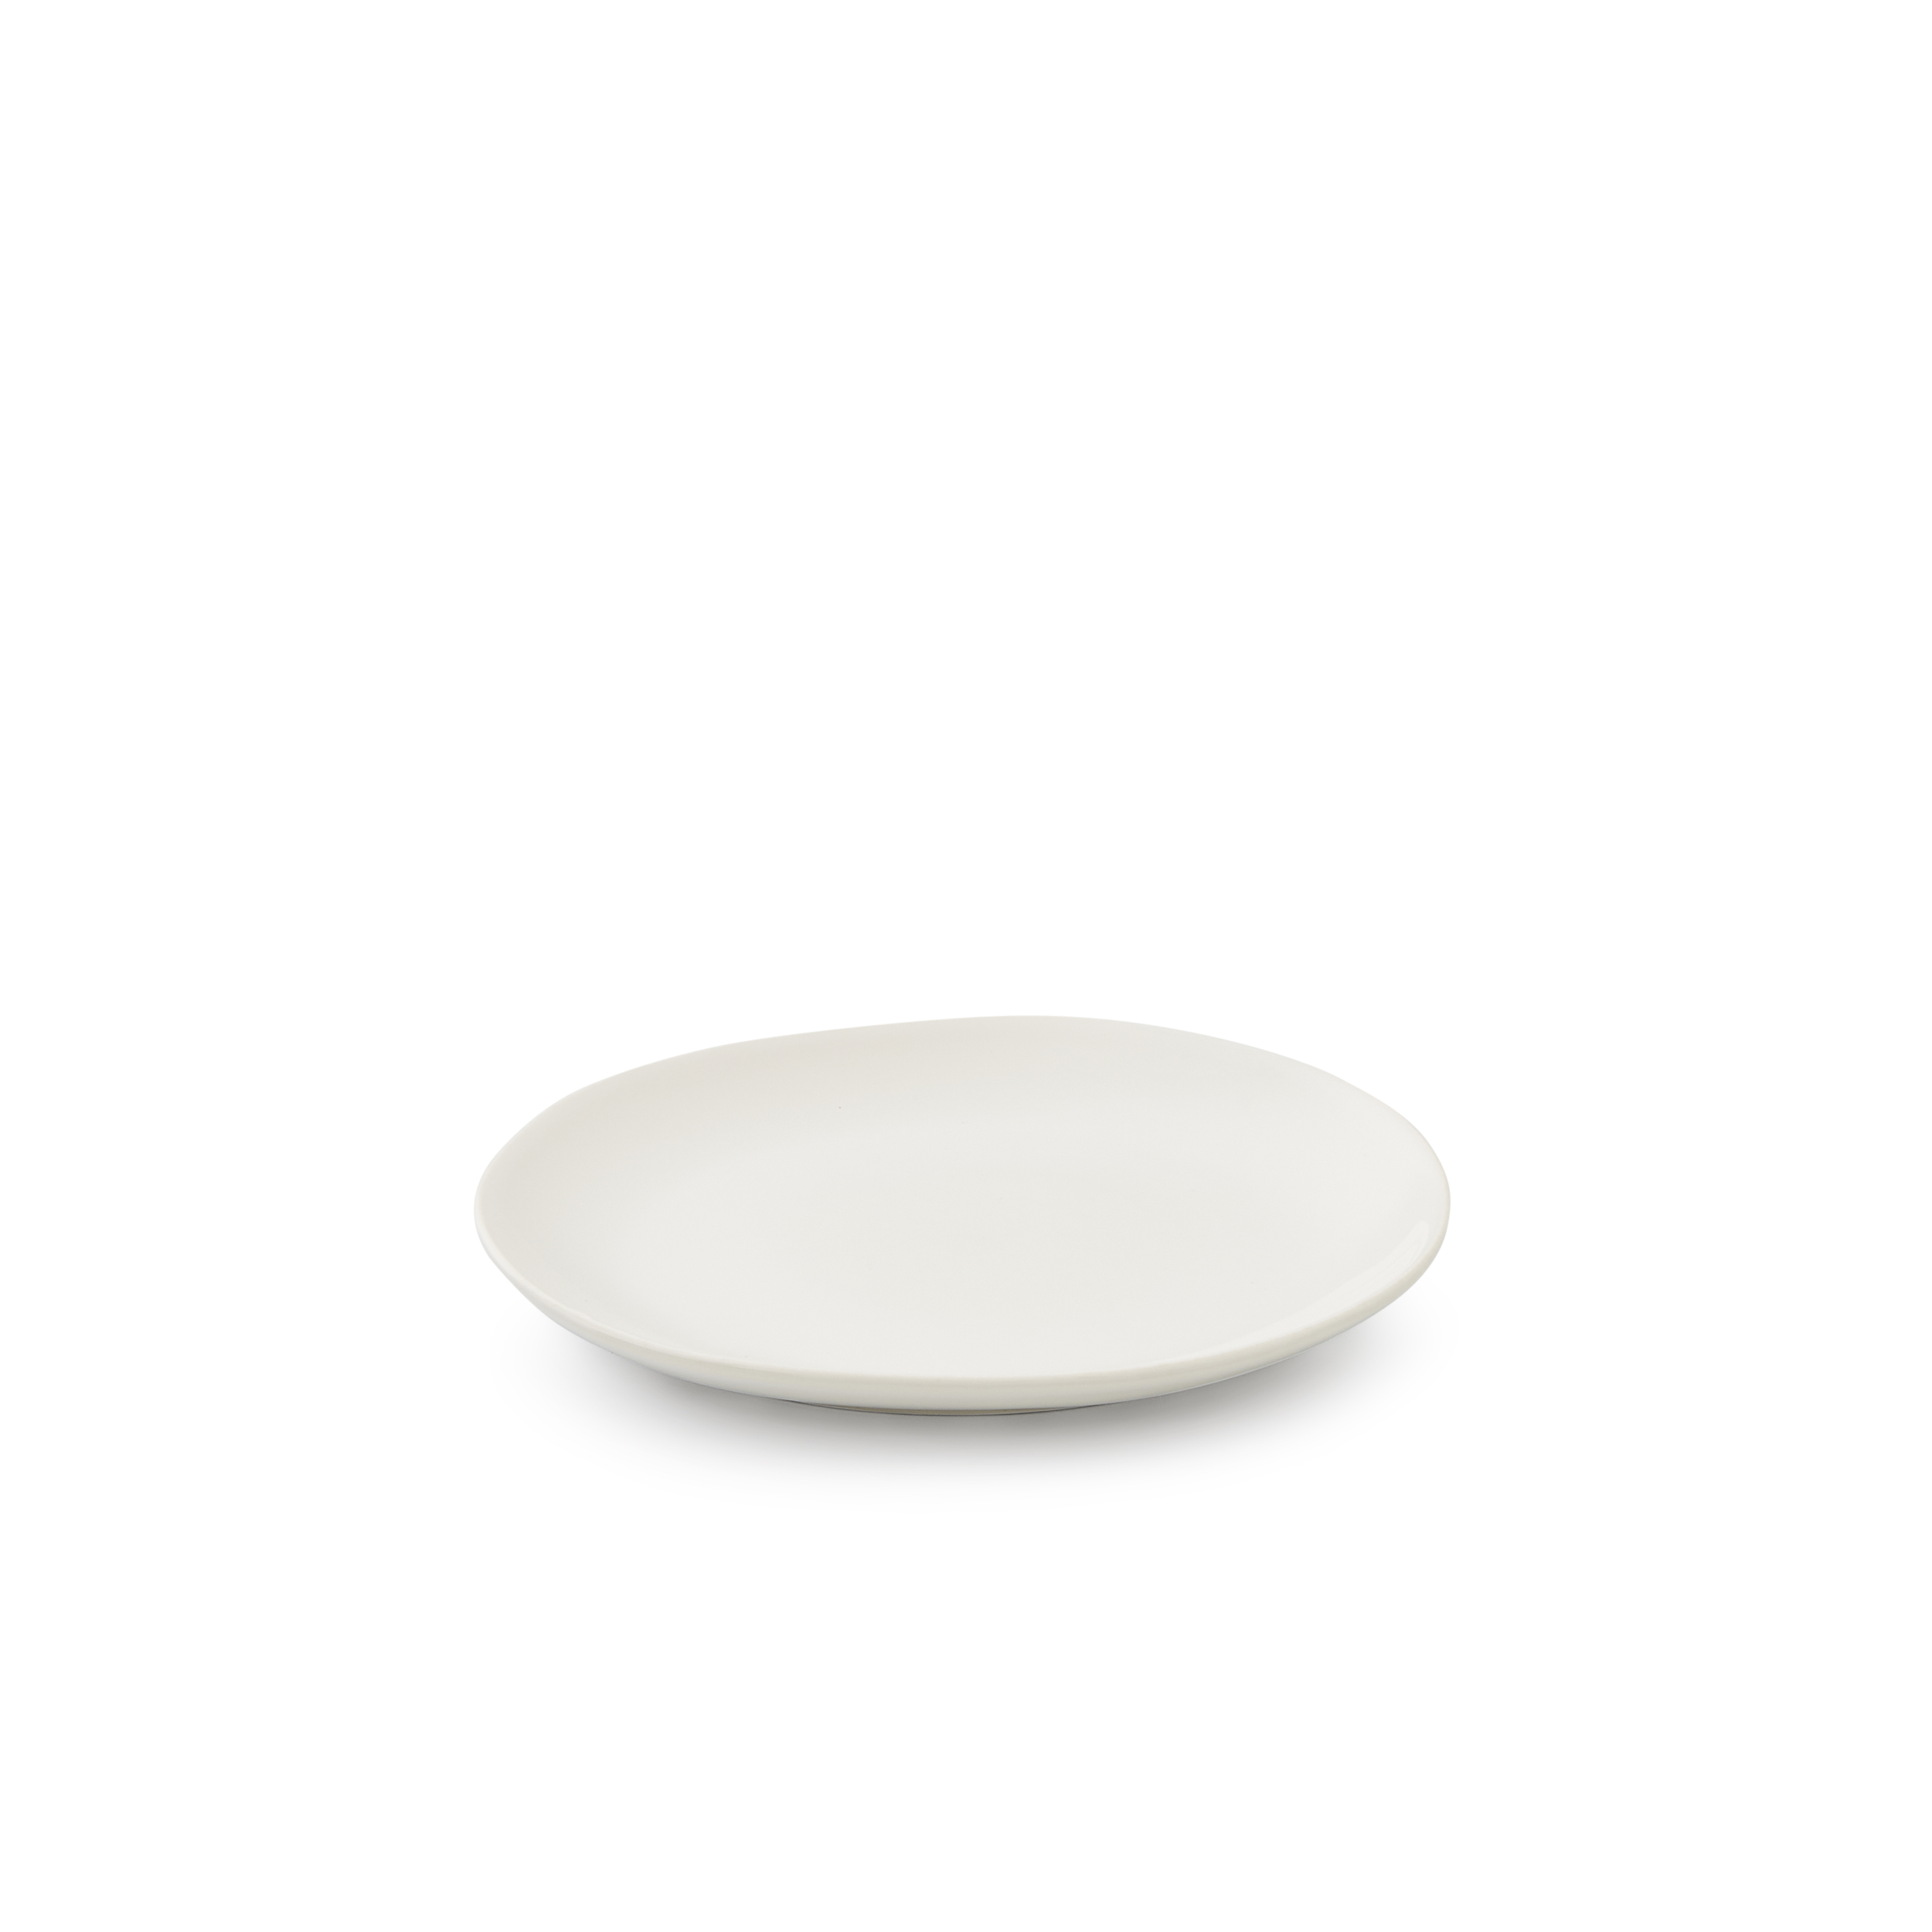 Sophie Conran Arbor Salad Plate, Cream image number null